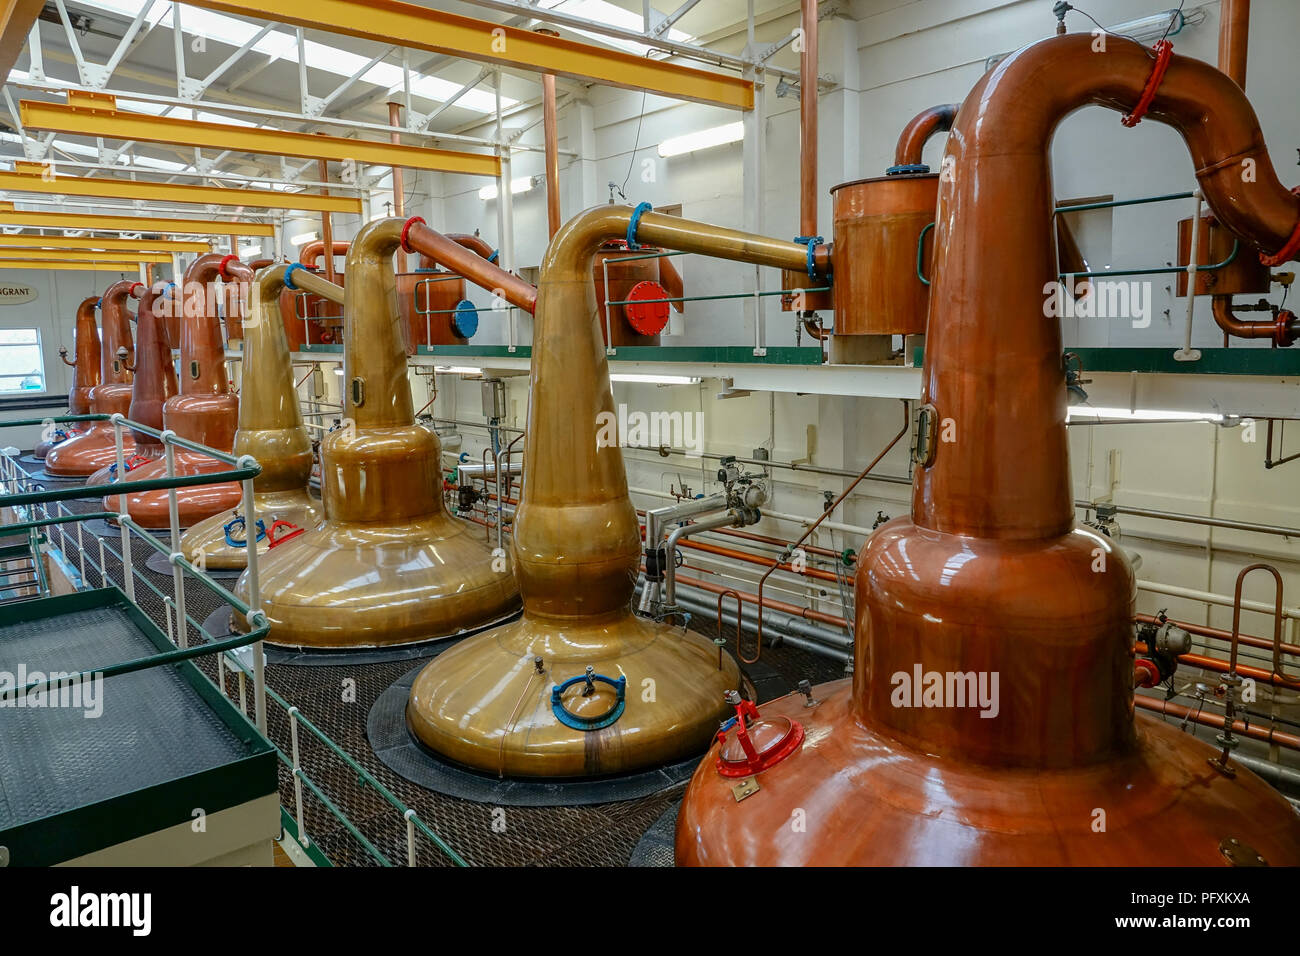 Photos de whisky à la distillerie Glen Grant dans les highlands, Ecosse Banque D'Images